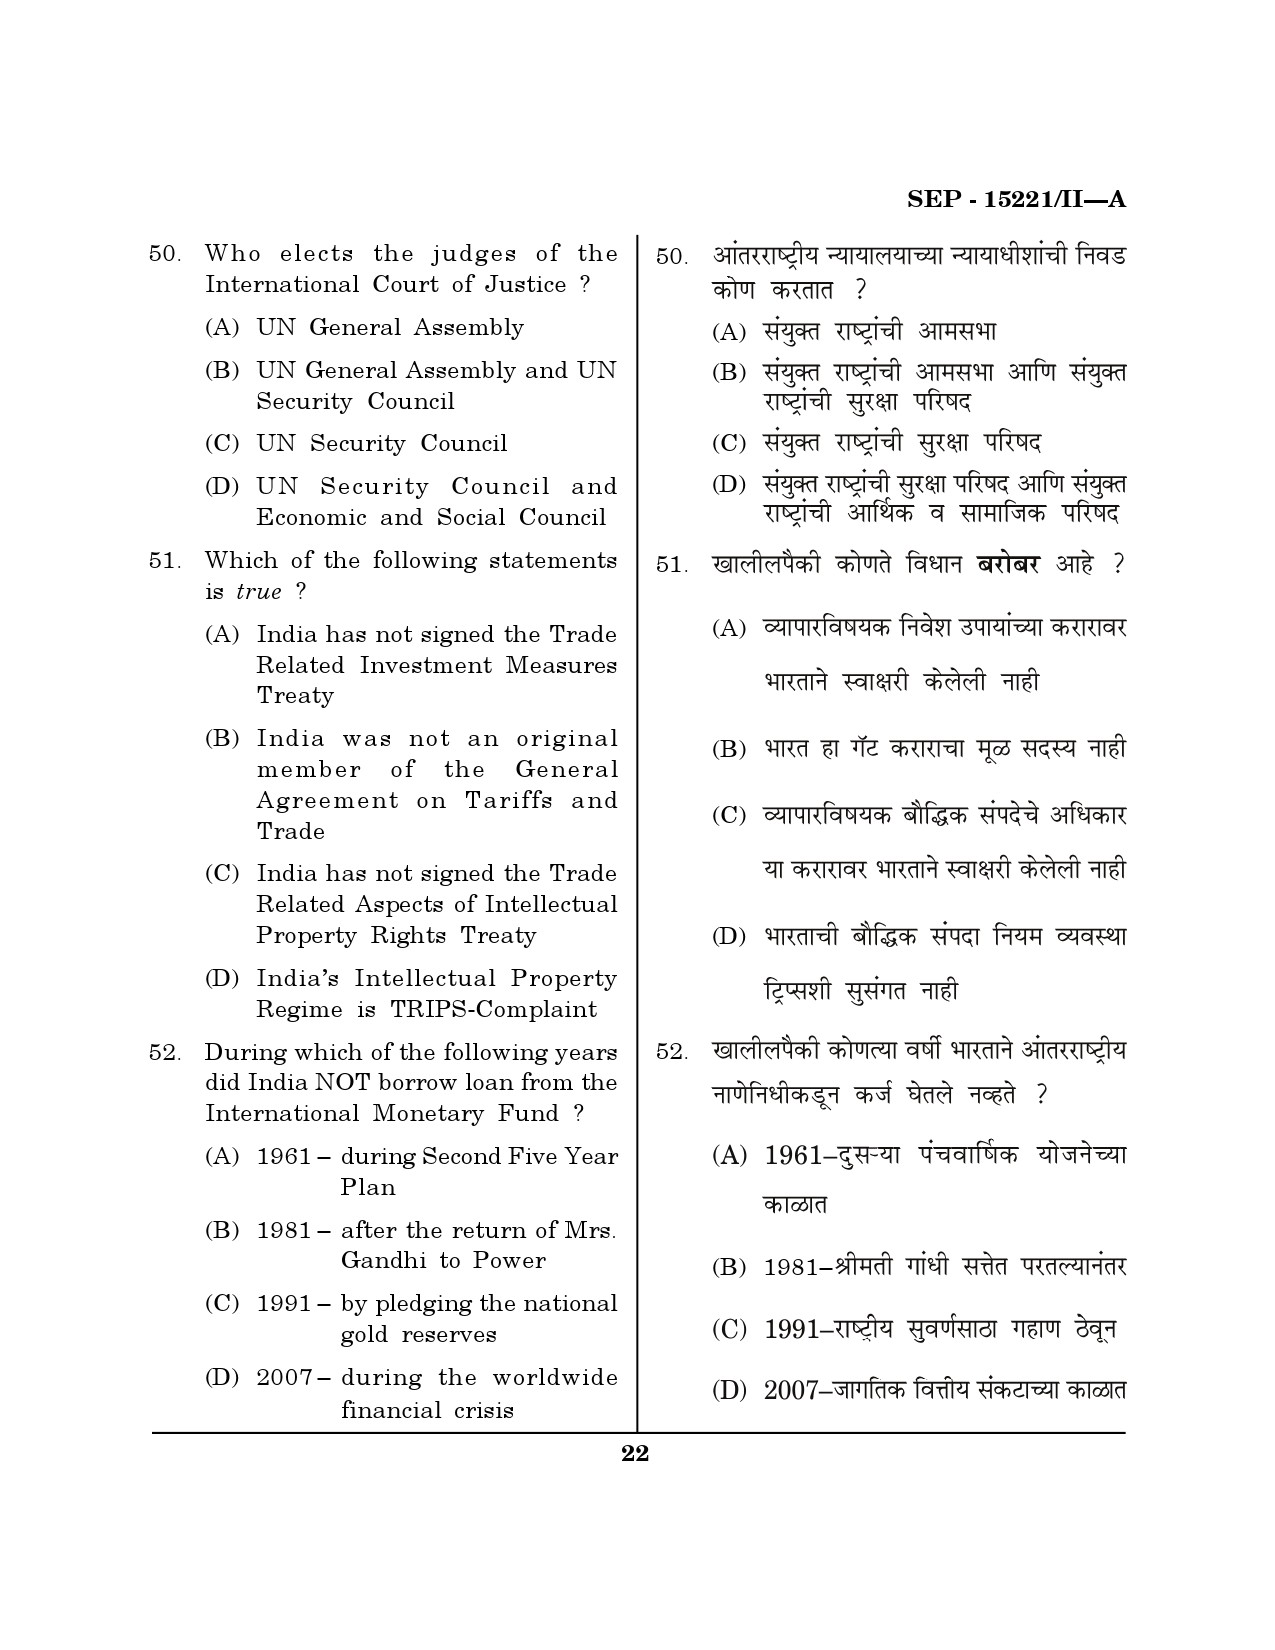 Maharashtra SET Political Science Exam Question Paper September 2021 21